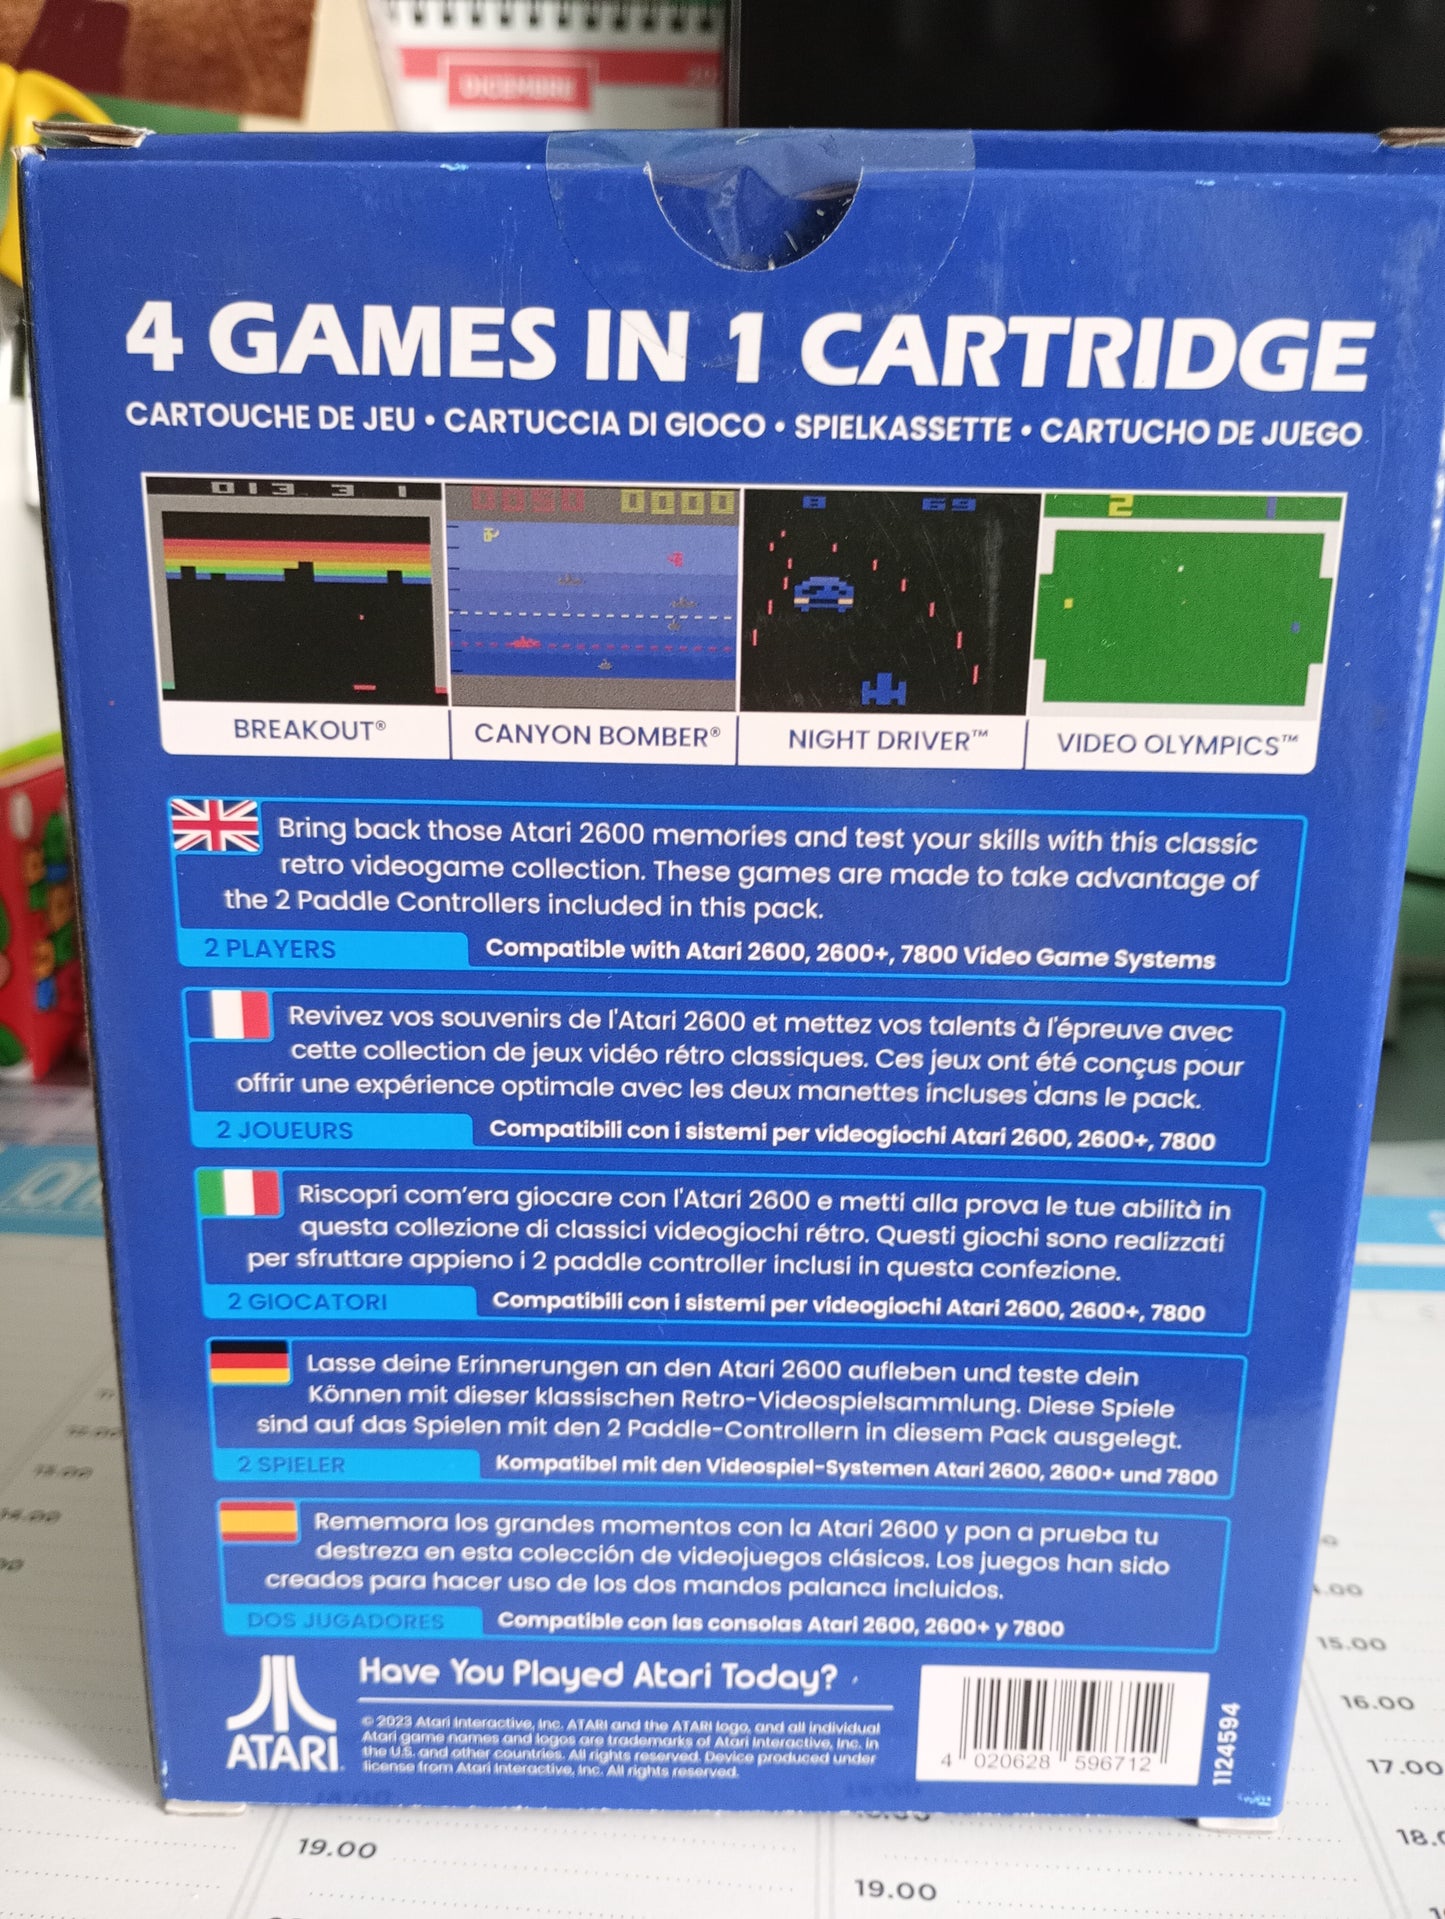 Atari Games 4 in 1